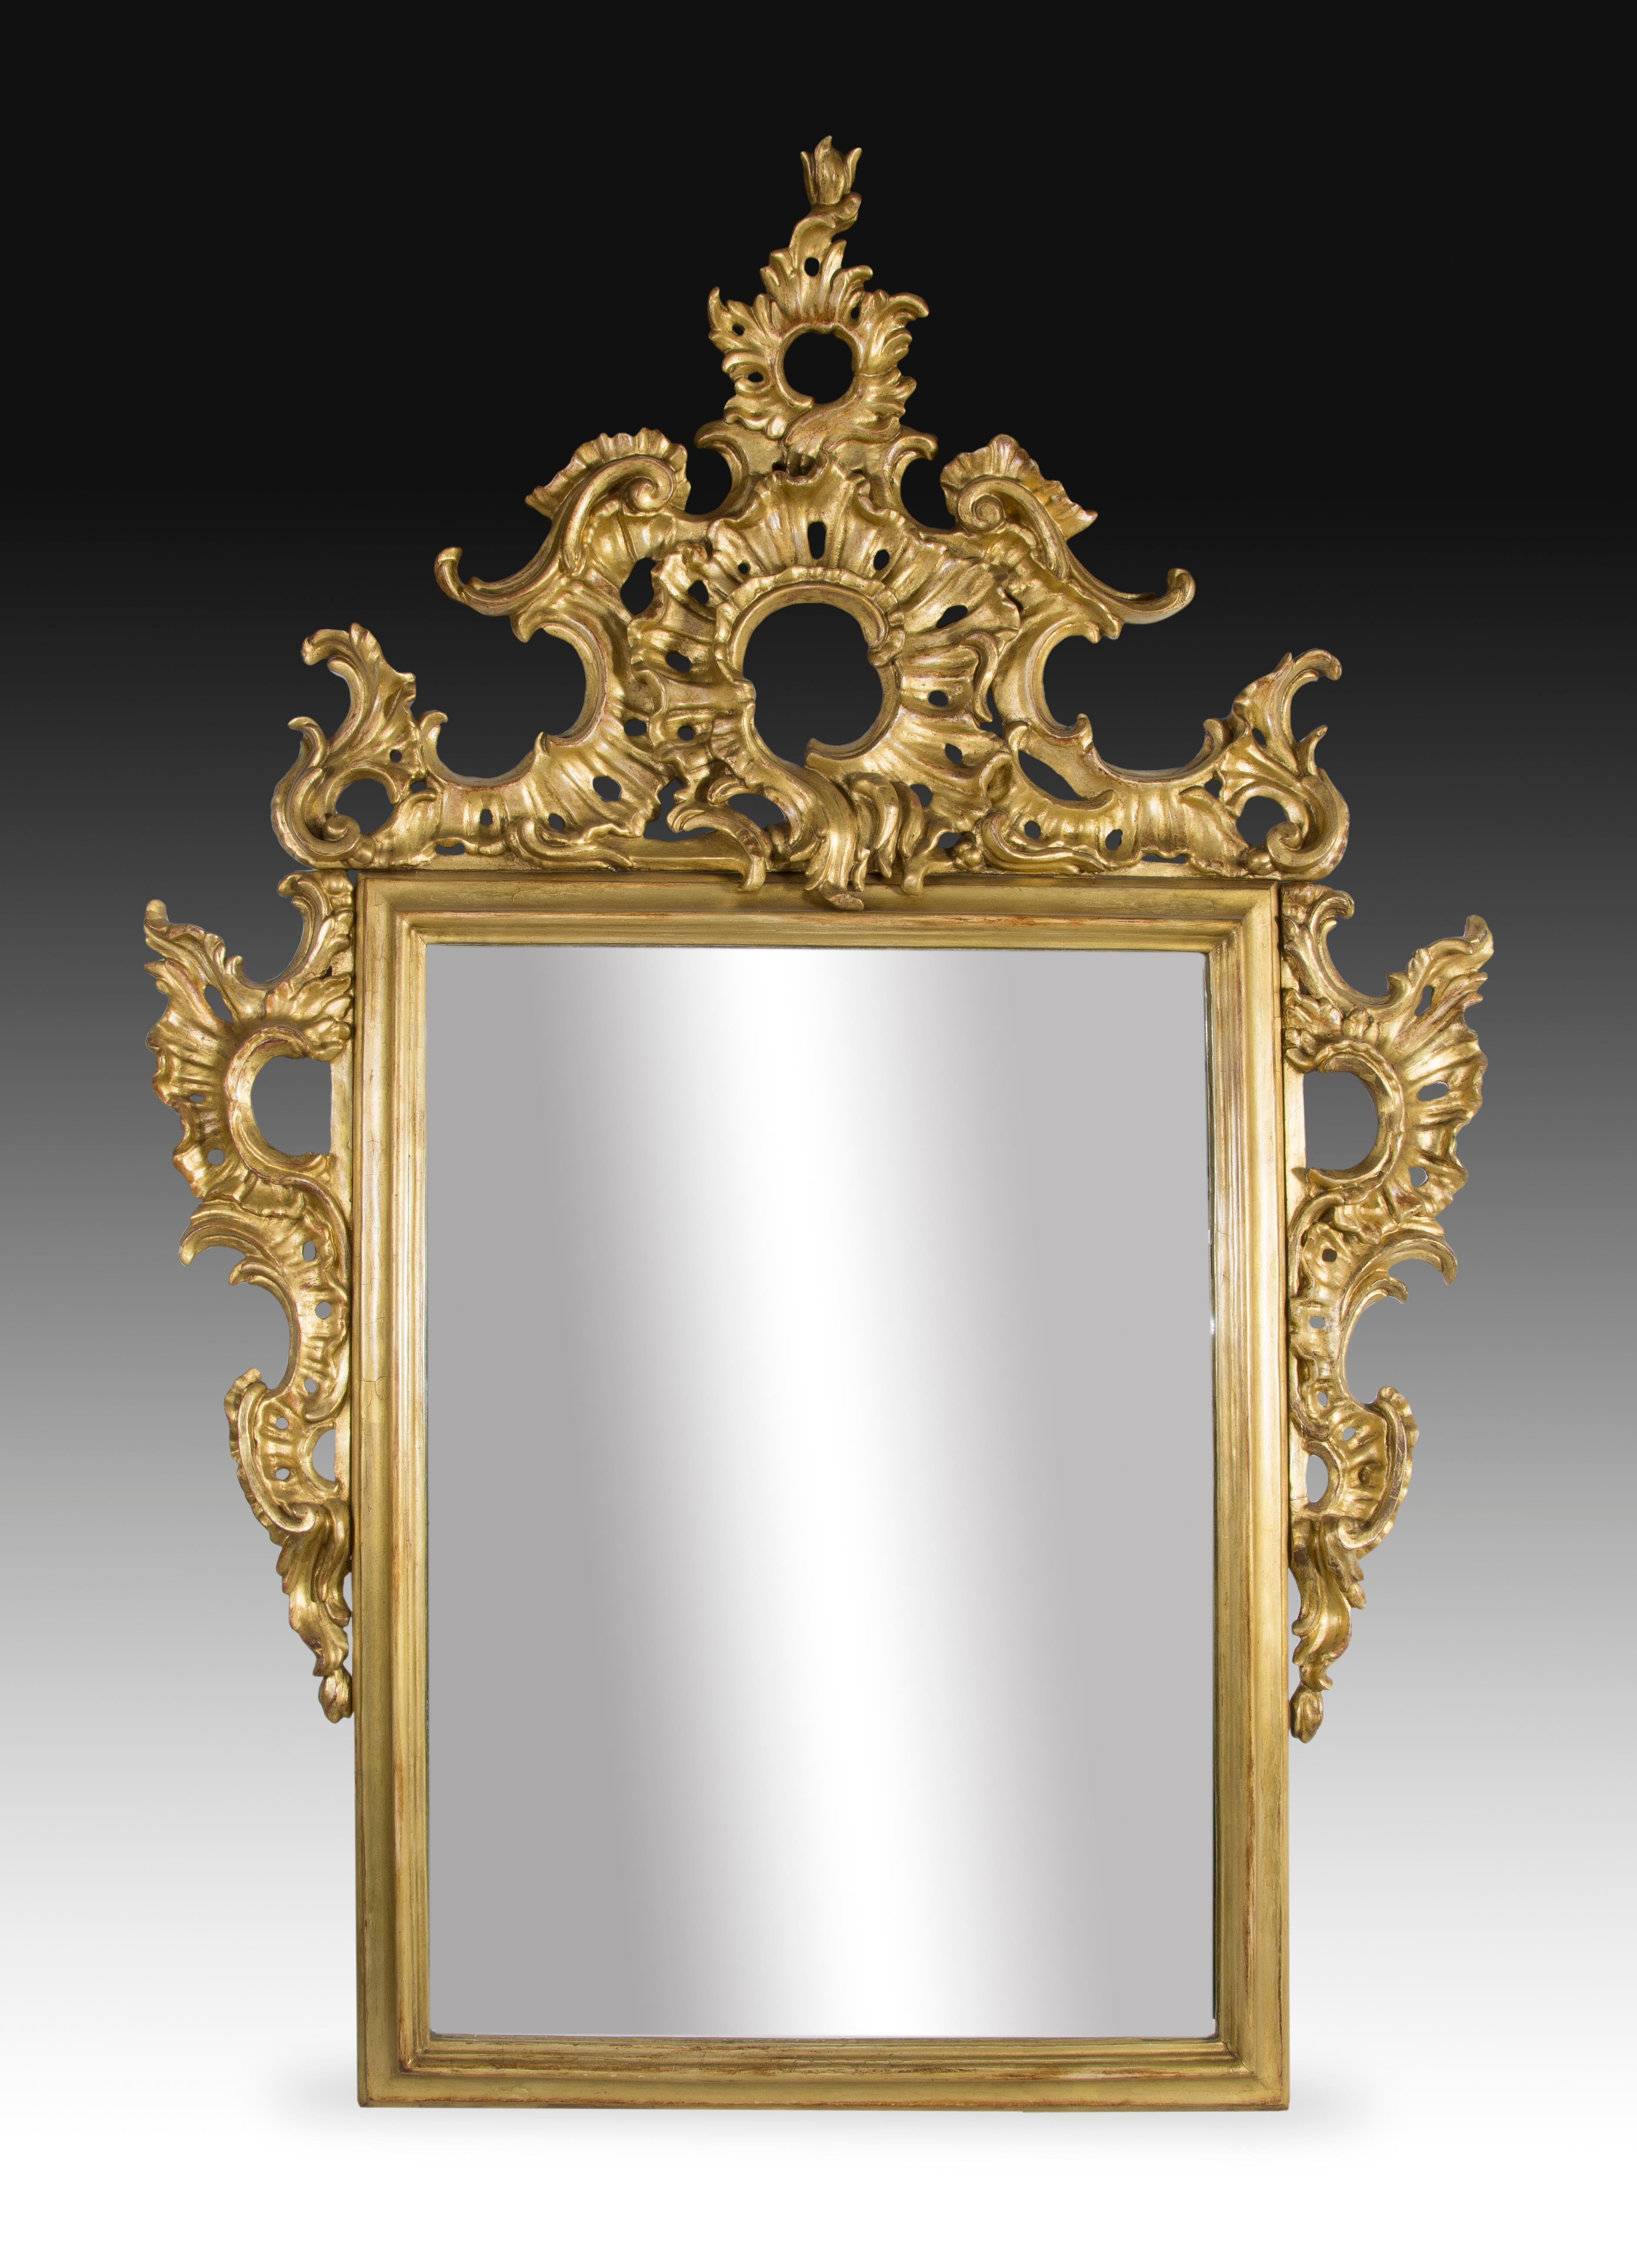 Füllhorn, geschnitztes und vergoldetes Holz, 19. Jahrhundert.
Rechteckiger Spiegel mit einem Rahmen, der durch eine sich an den Seiten erstreckende Cupete hervorgehoben wird. Dieses Exemplar ist mit Schnörkeln und Raketen gestaltet, die sich direkt